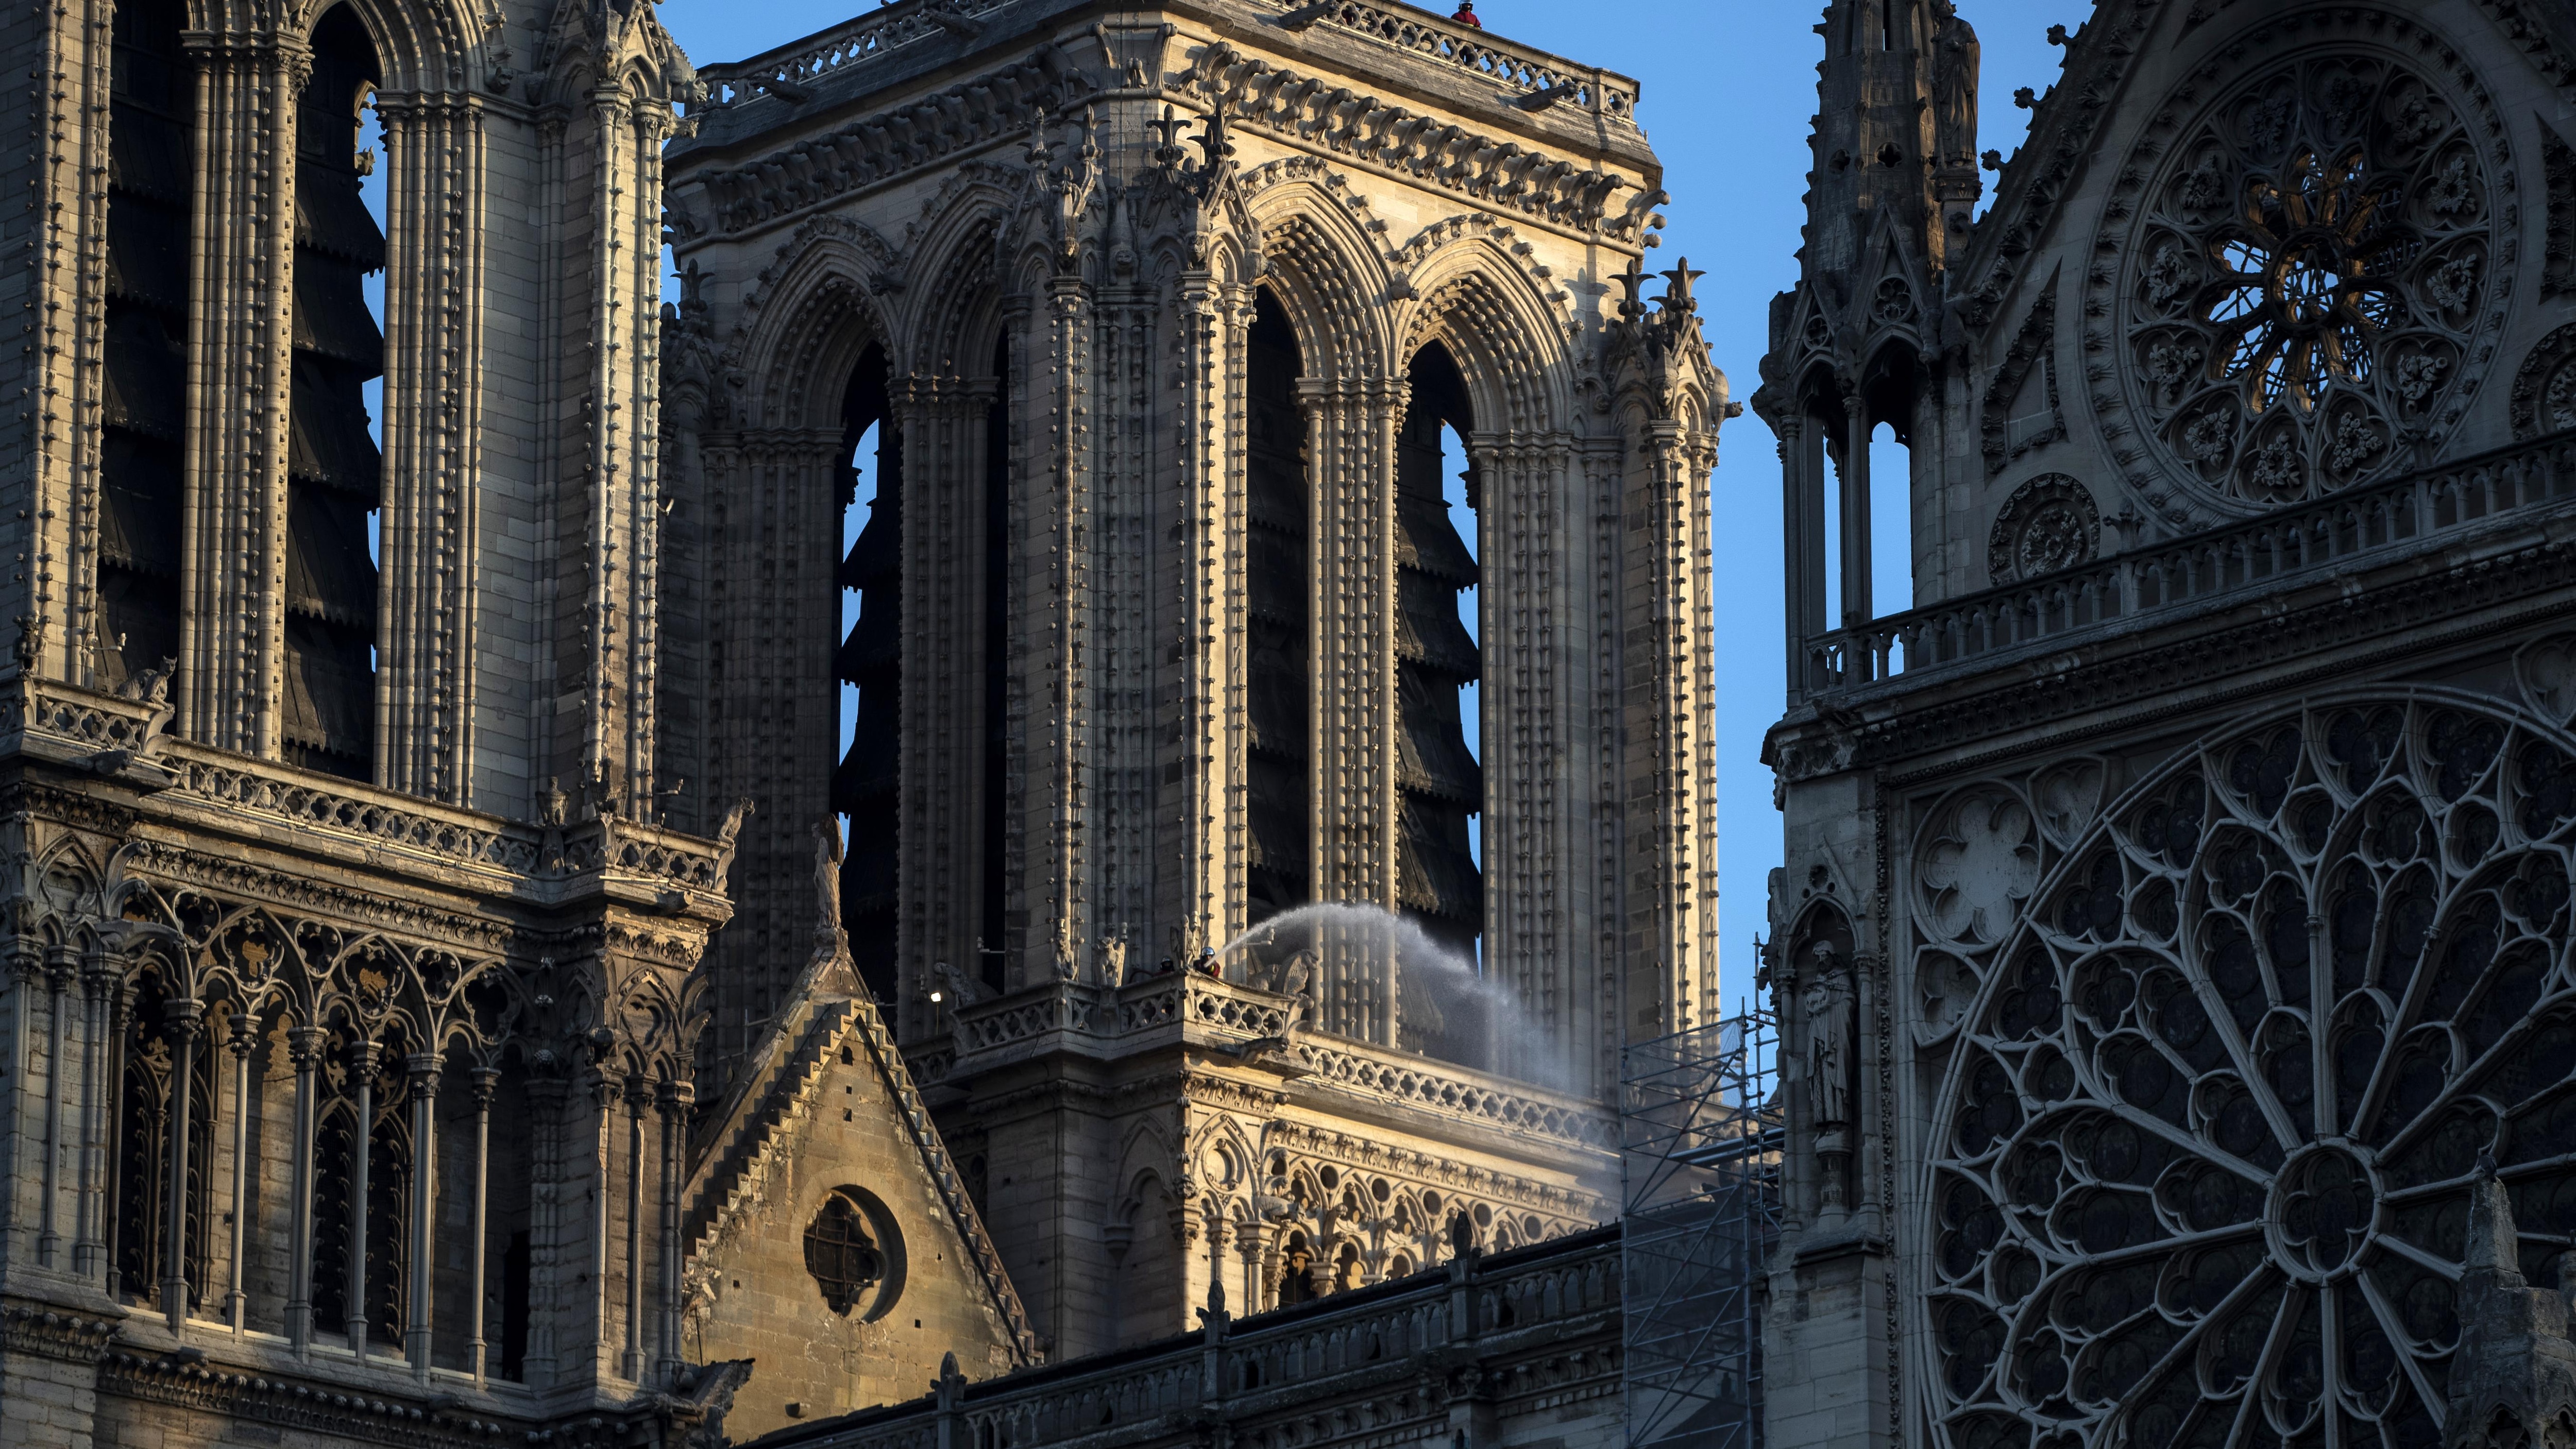 Нотр дам театр. Портал Святой Анны собора Парижской Богоматери. Купол собора Парижской Богоматери.